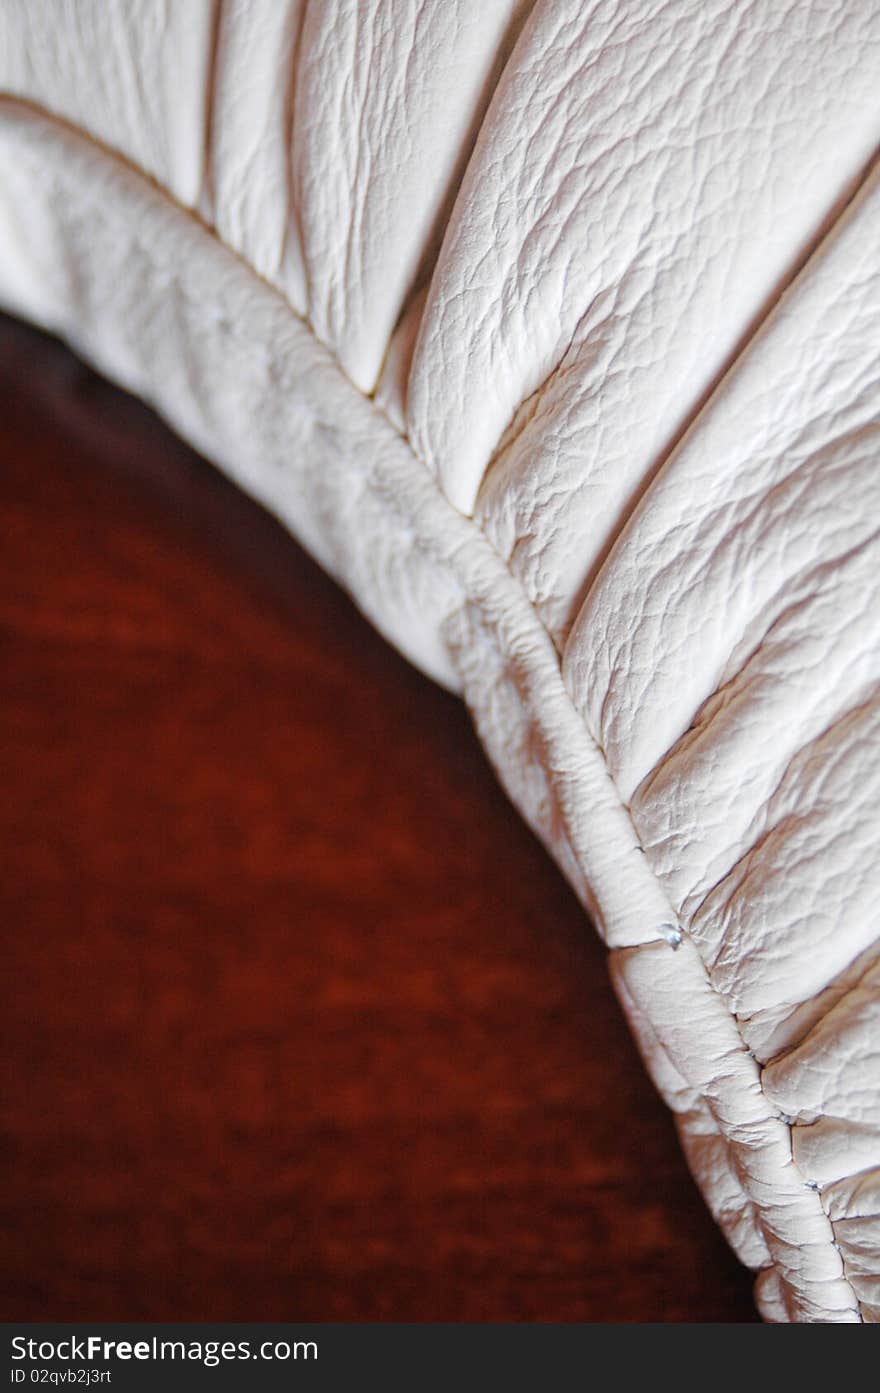 Wood and leather sofa closeup. Wood and leather sofa closeup